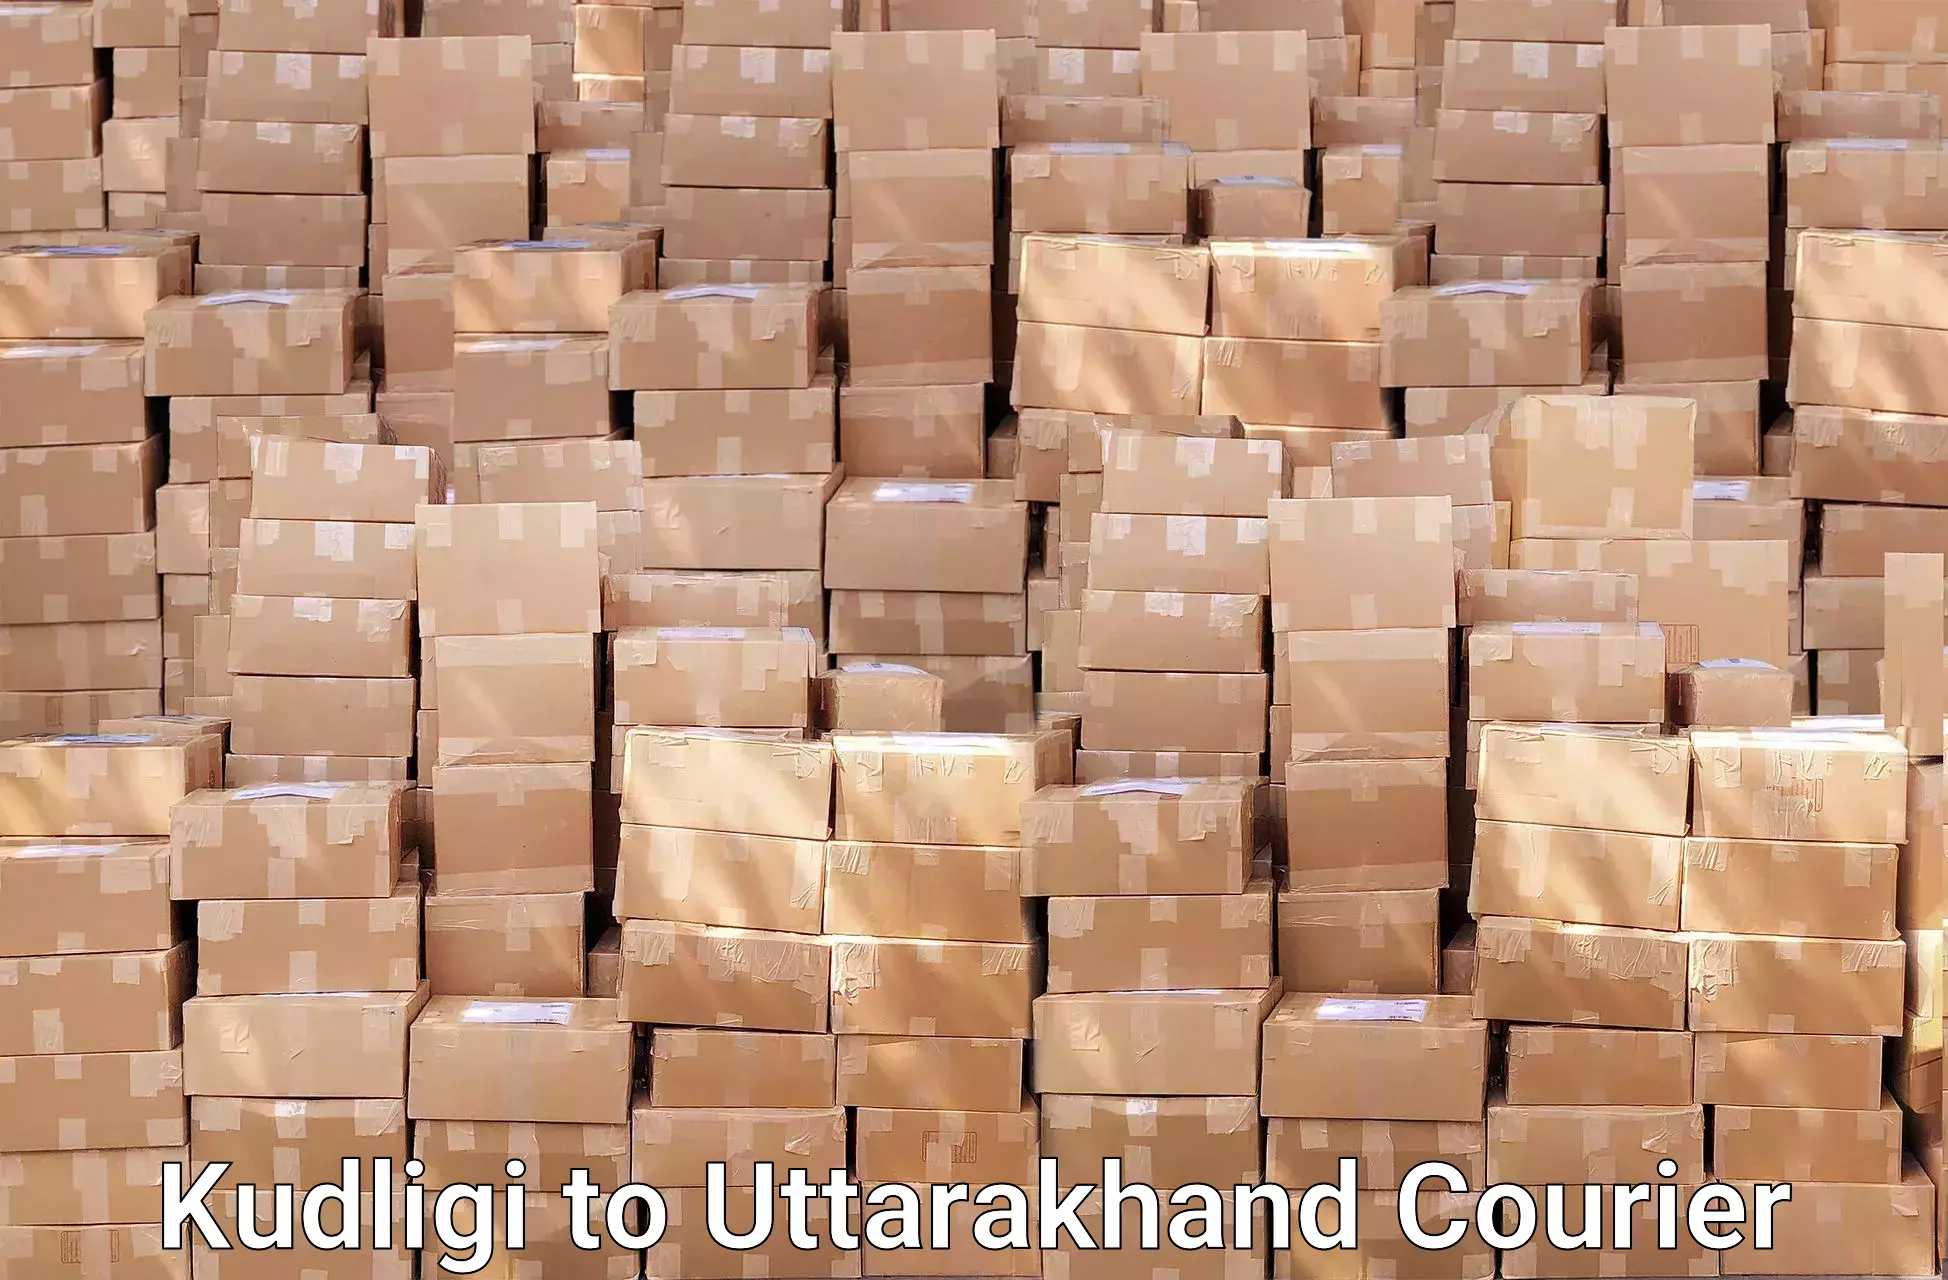 Quality moving and storage Kudligi to Uttarakhand